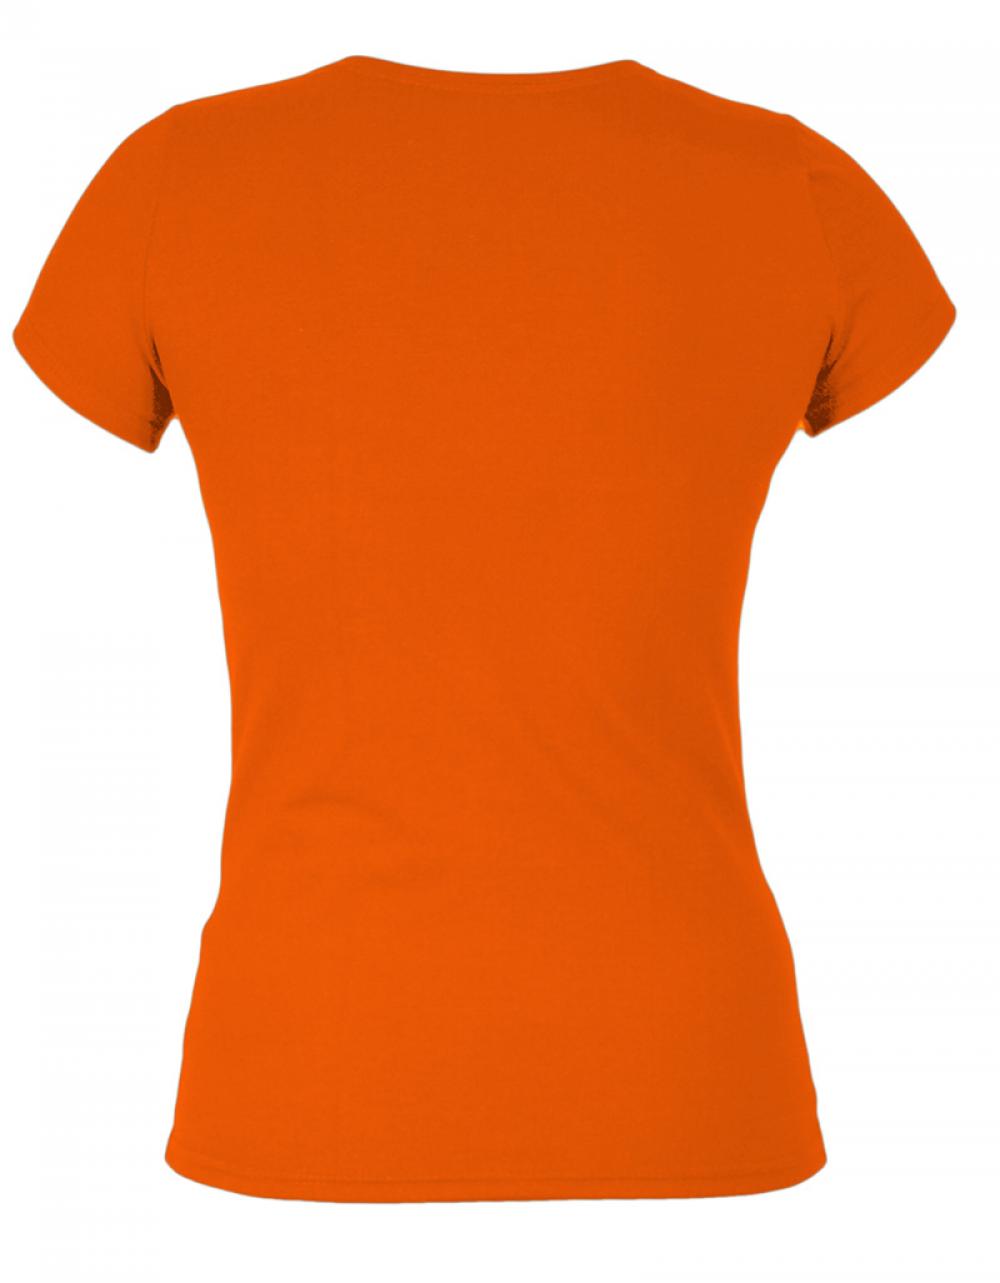 t-shirt_bw_orange_h.jpg